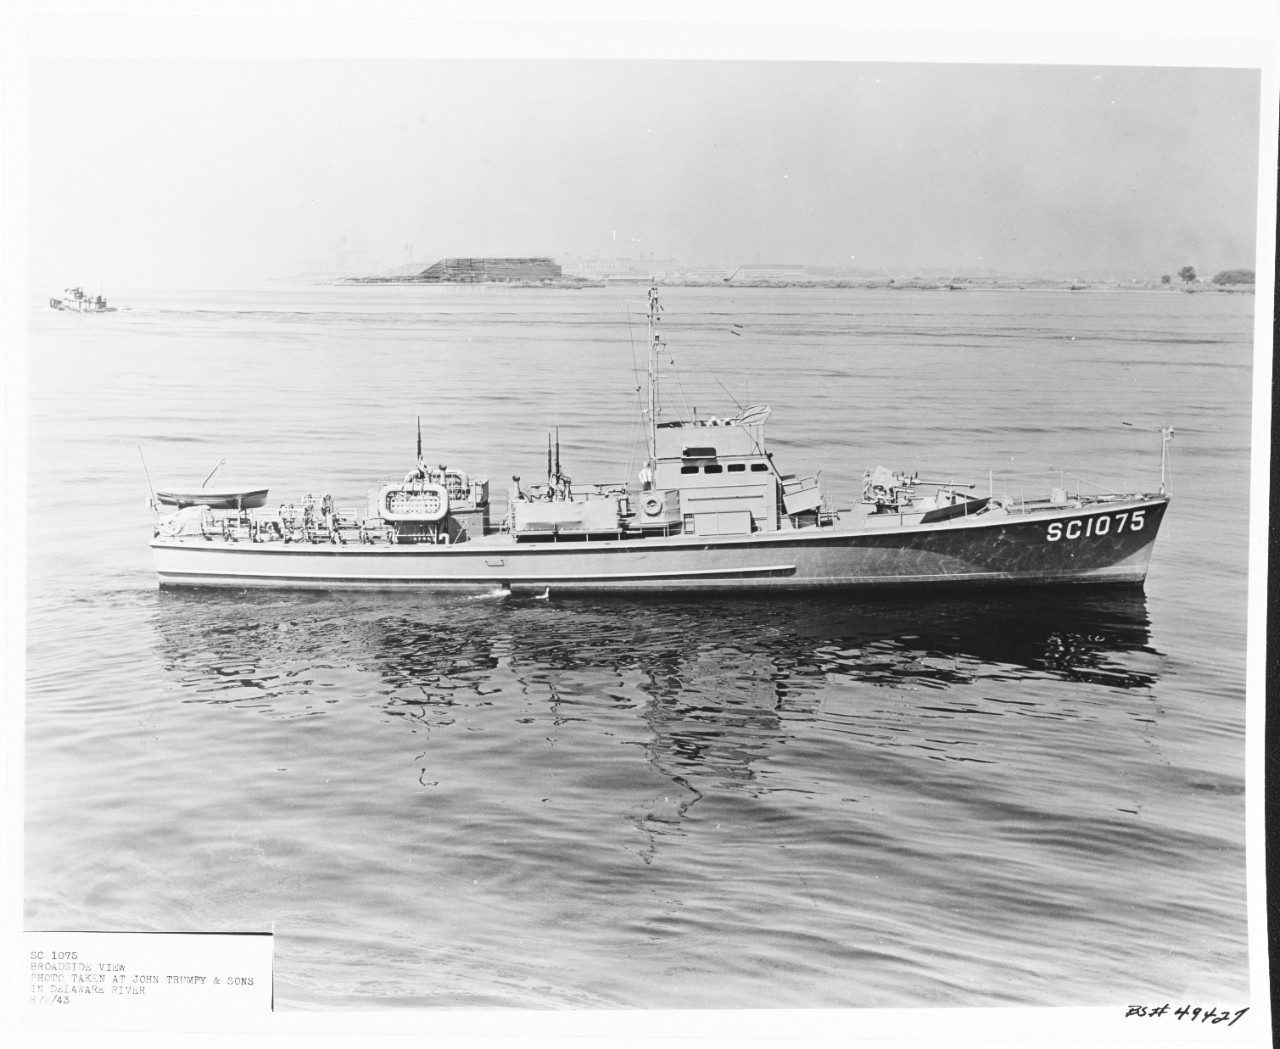 USS SC-1075